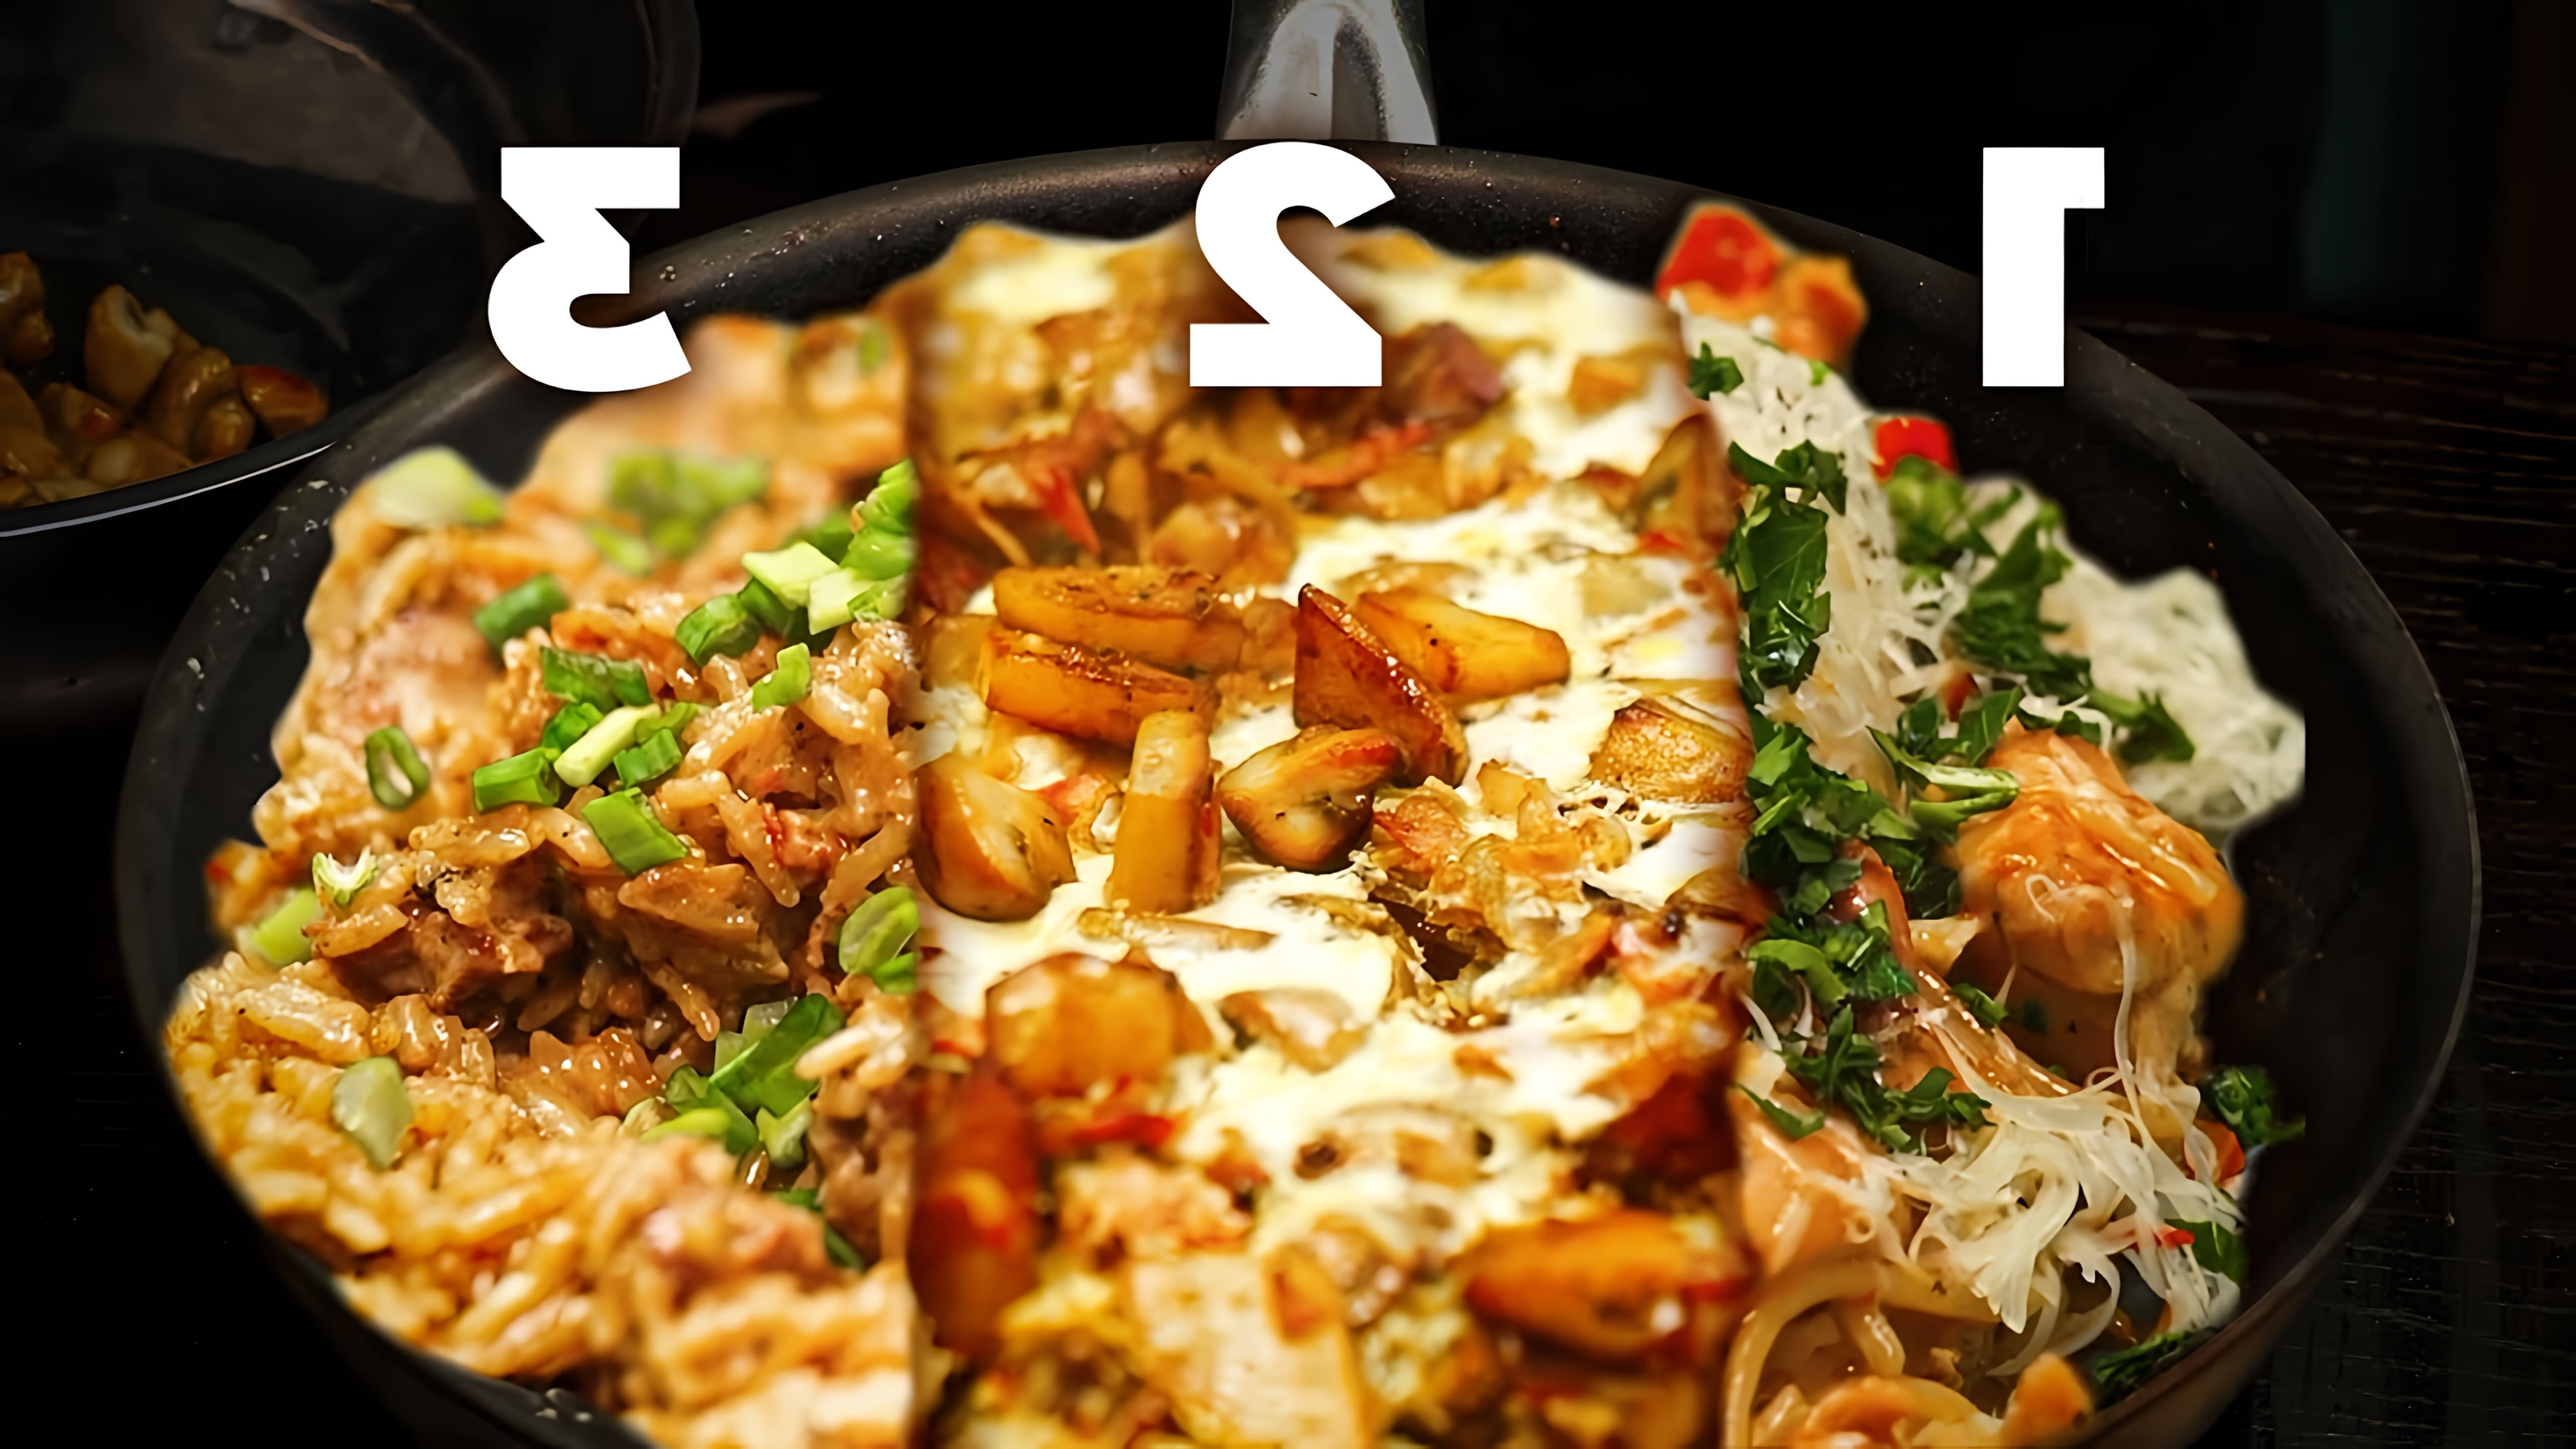 В этом видео показаны три блюда, которые можно приготовить в одной сковородке: куриные бедрышки с макаронами, жареная картошка с грибами и сыром, и китайская свинина с рисом